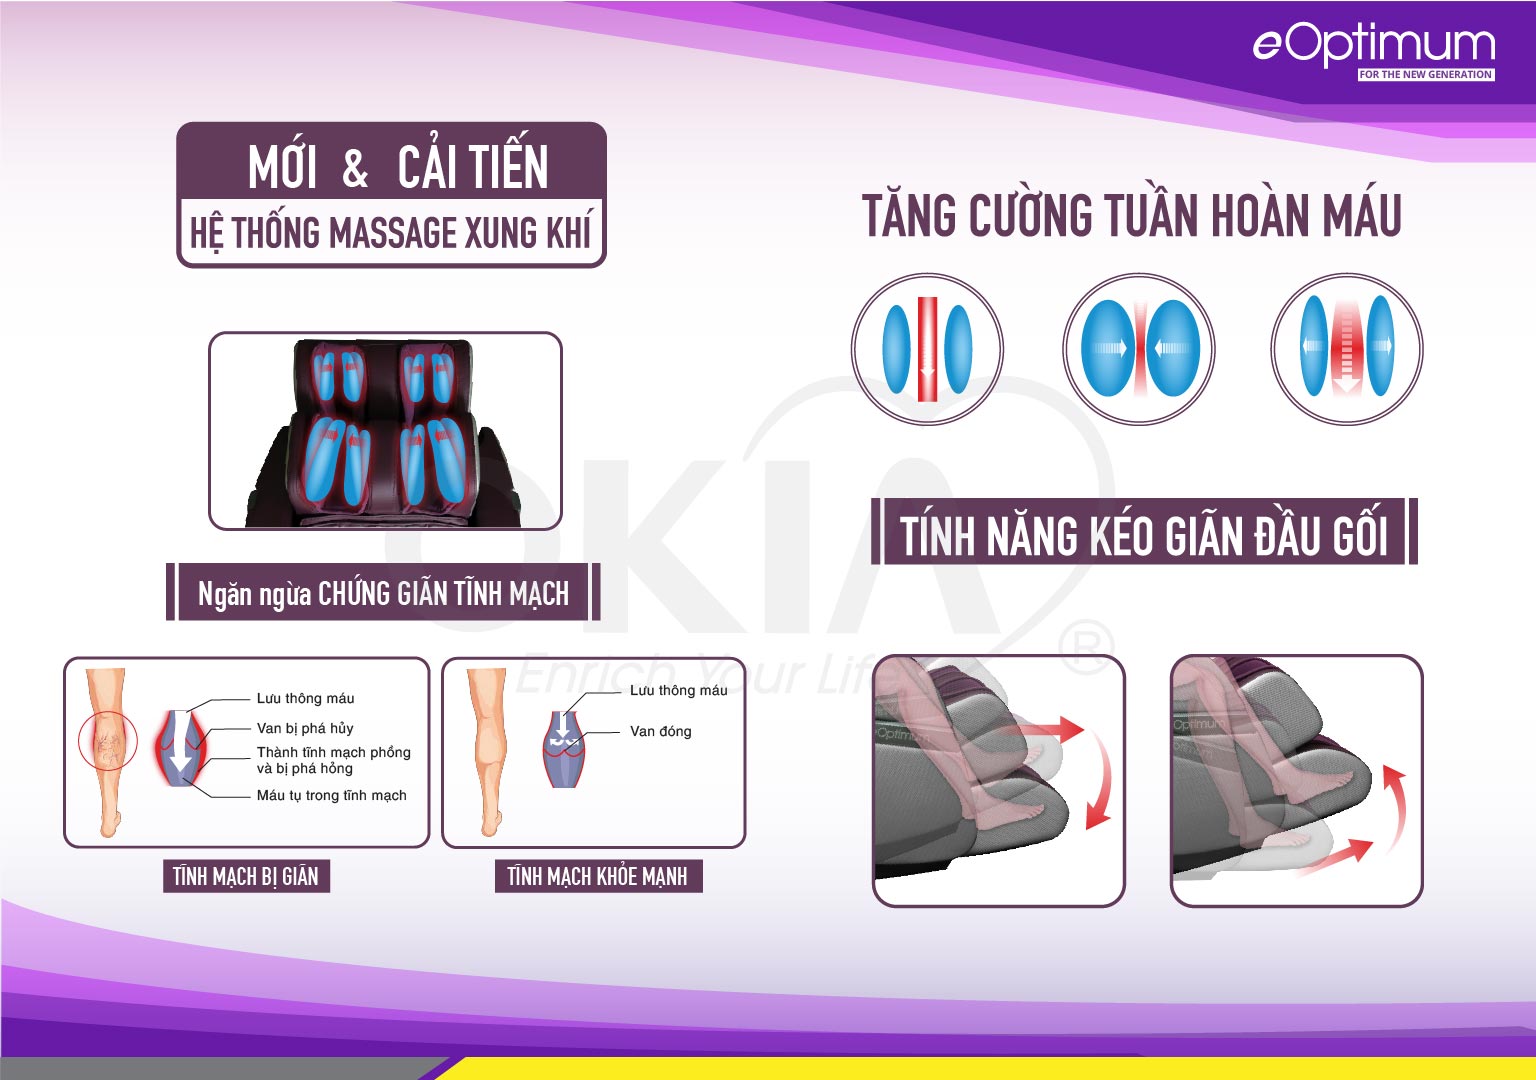 Hệ thống túi khí và tính năng kéo giãn chân của Ghế massage OKIA eOptimum